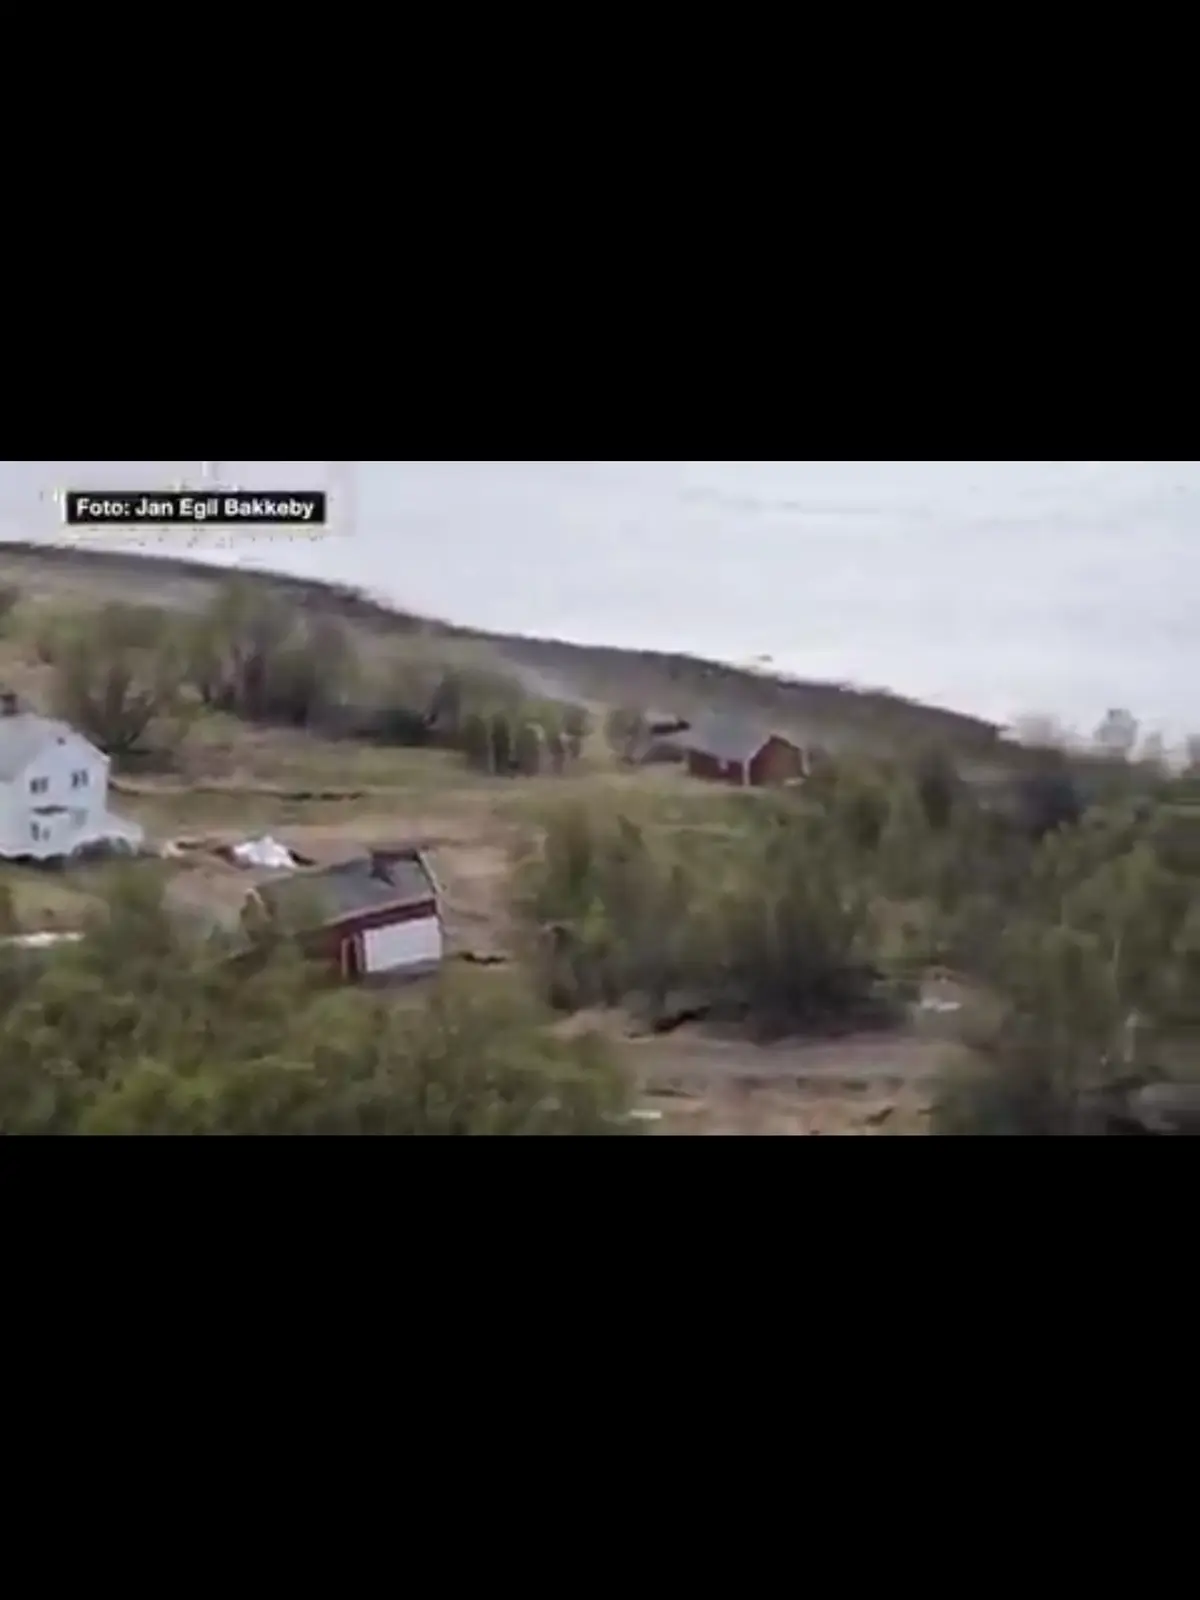 پدیده " گِل‌شار" یا جریان گِل ساعاتی پیش در نروژ، استان فینمارک+فیلم